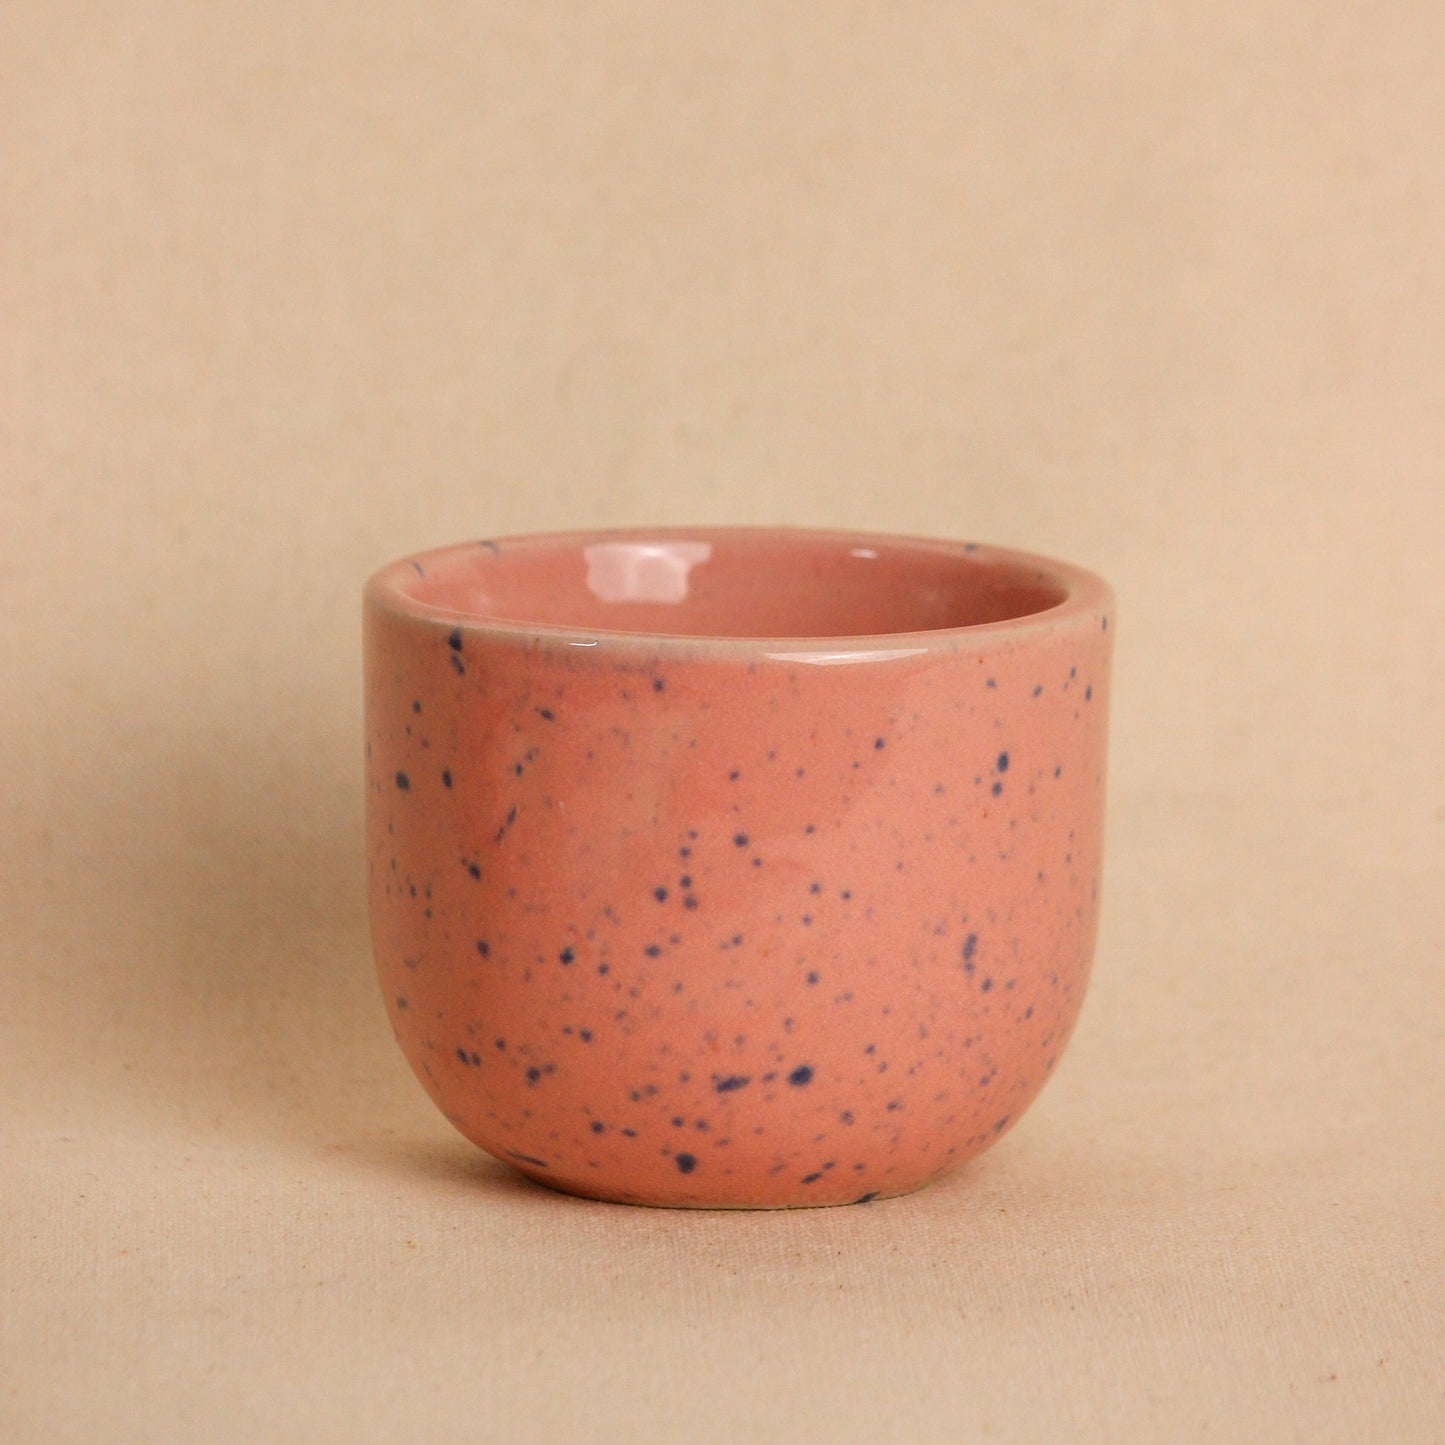 Pink Speckled Mug